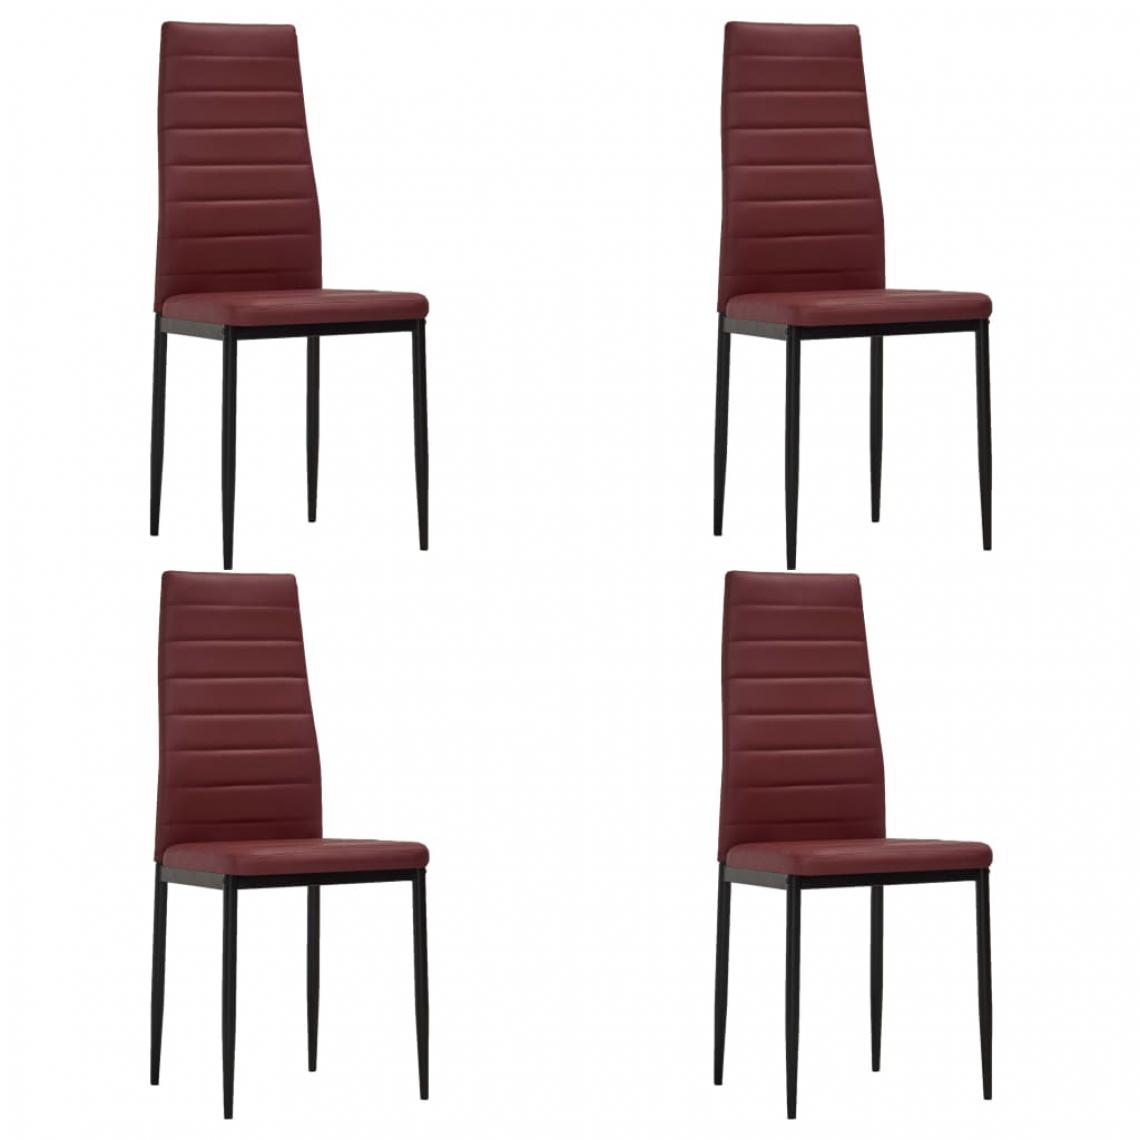 Icaverne - Contemporain Fauteuils et chaises serie Mexico Chaises de salle à manger 4 pcs Rouge bordeaux Similicuir - Chaises